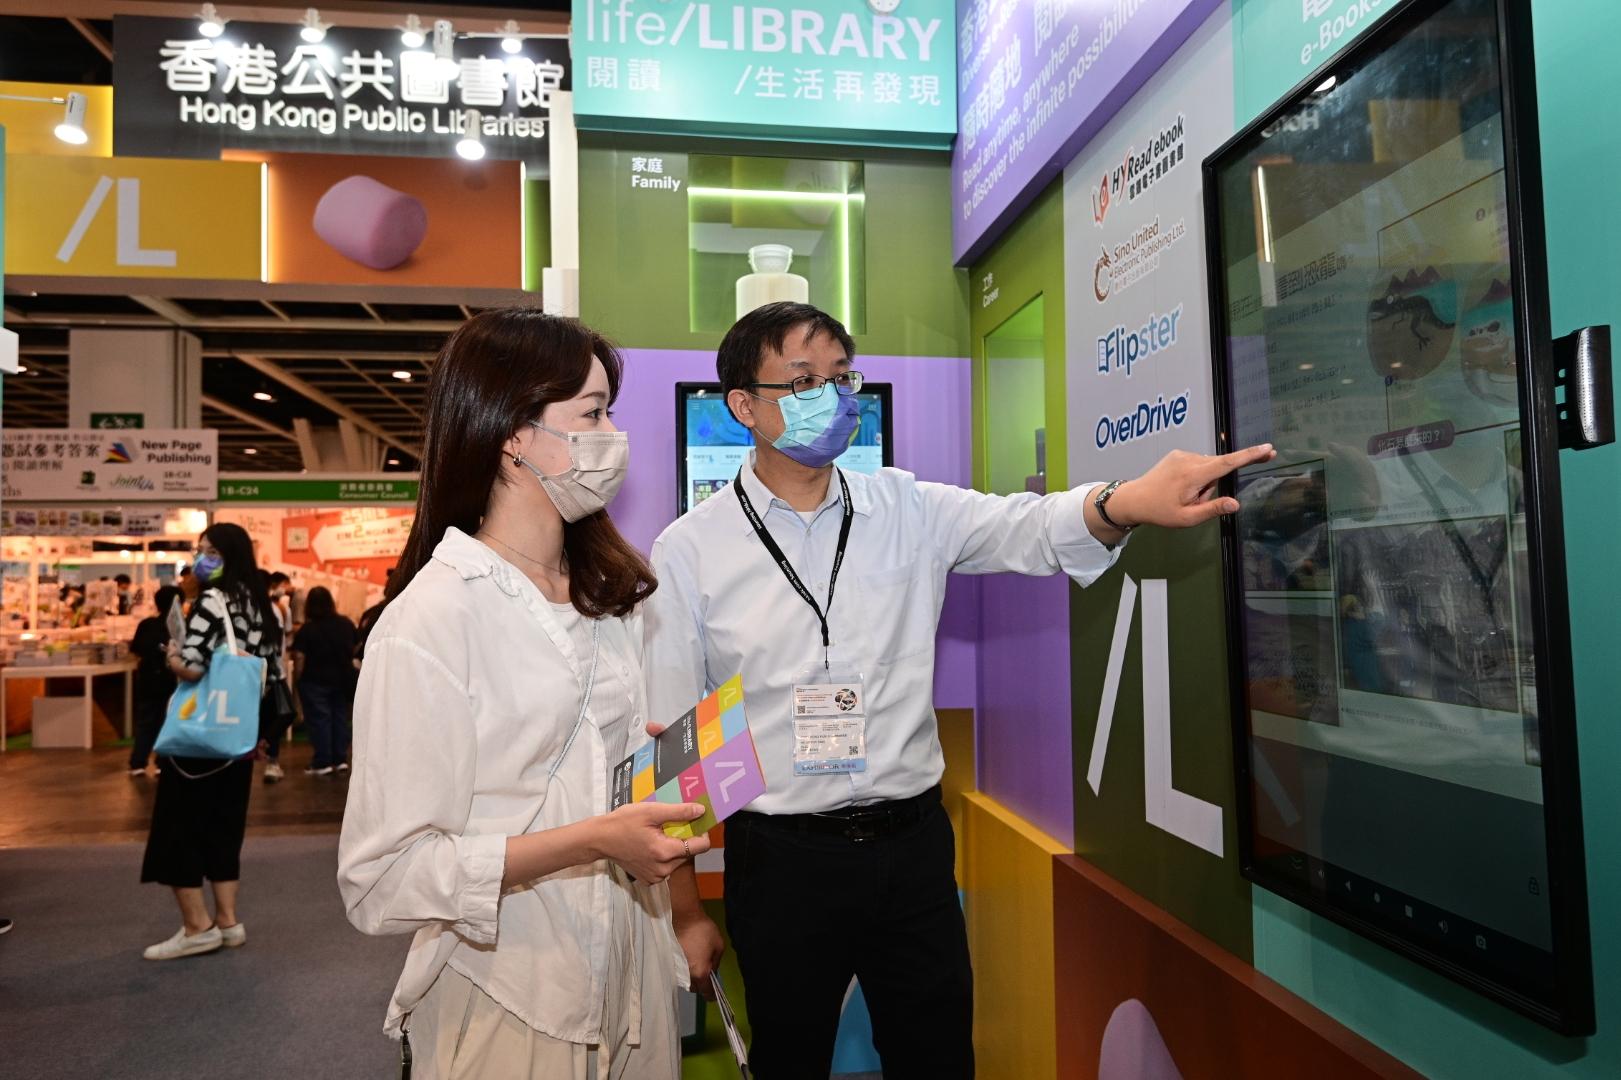 香港公共图书馆今日（七月二十日）至七月二十六日于香港书展设置摊位，向市民介绍图书馆丰富的电子资源馆藏。读者可于现场试用图书馆电子资源，体验网上图书馆服务的便捷。